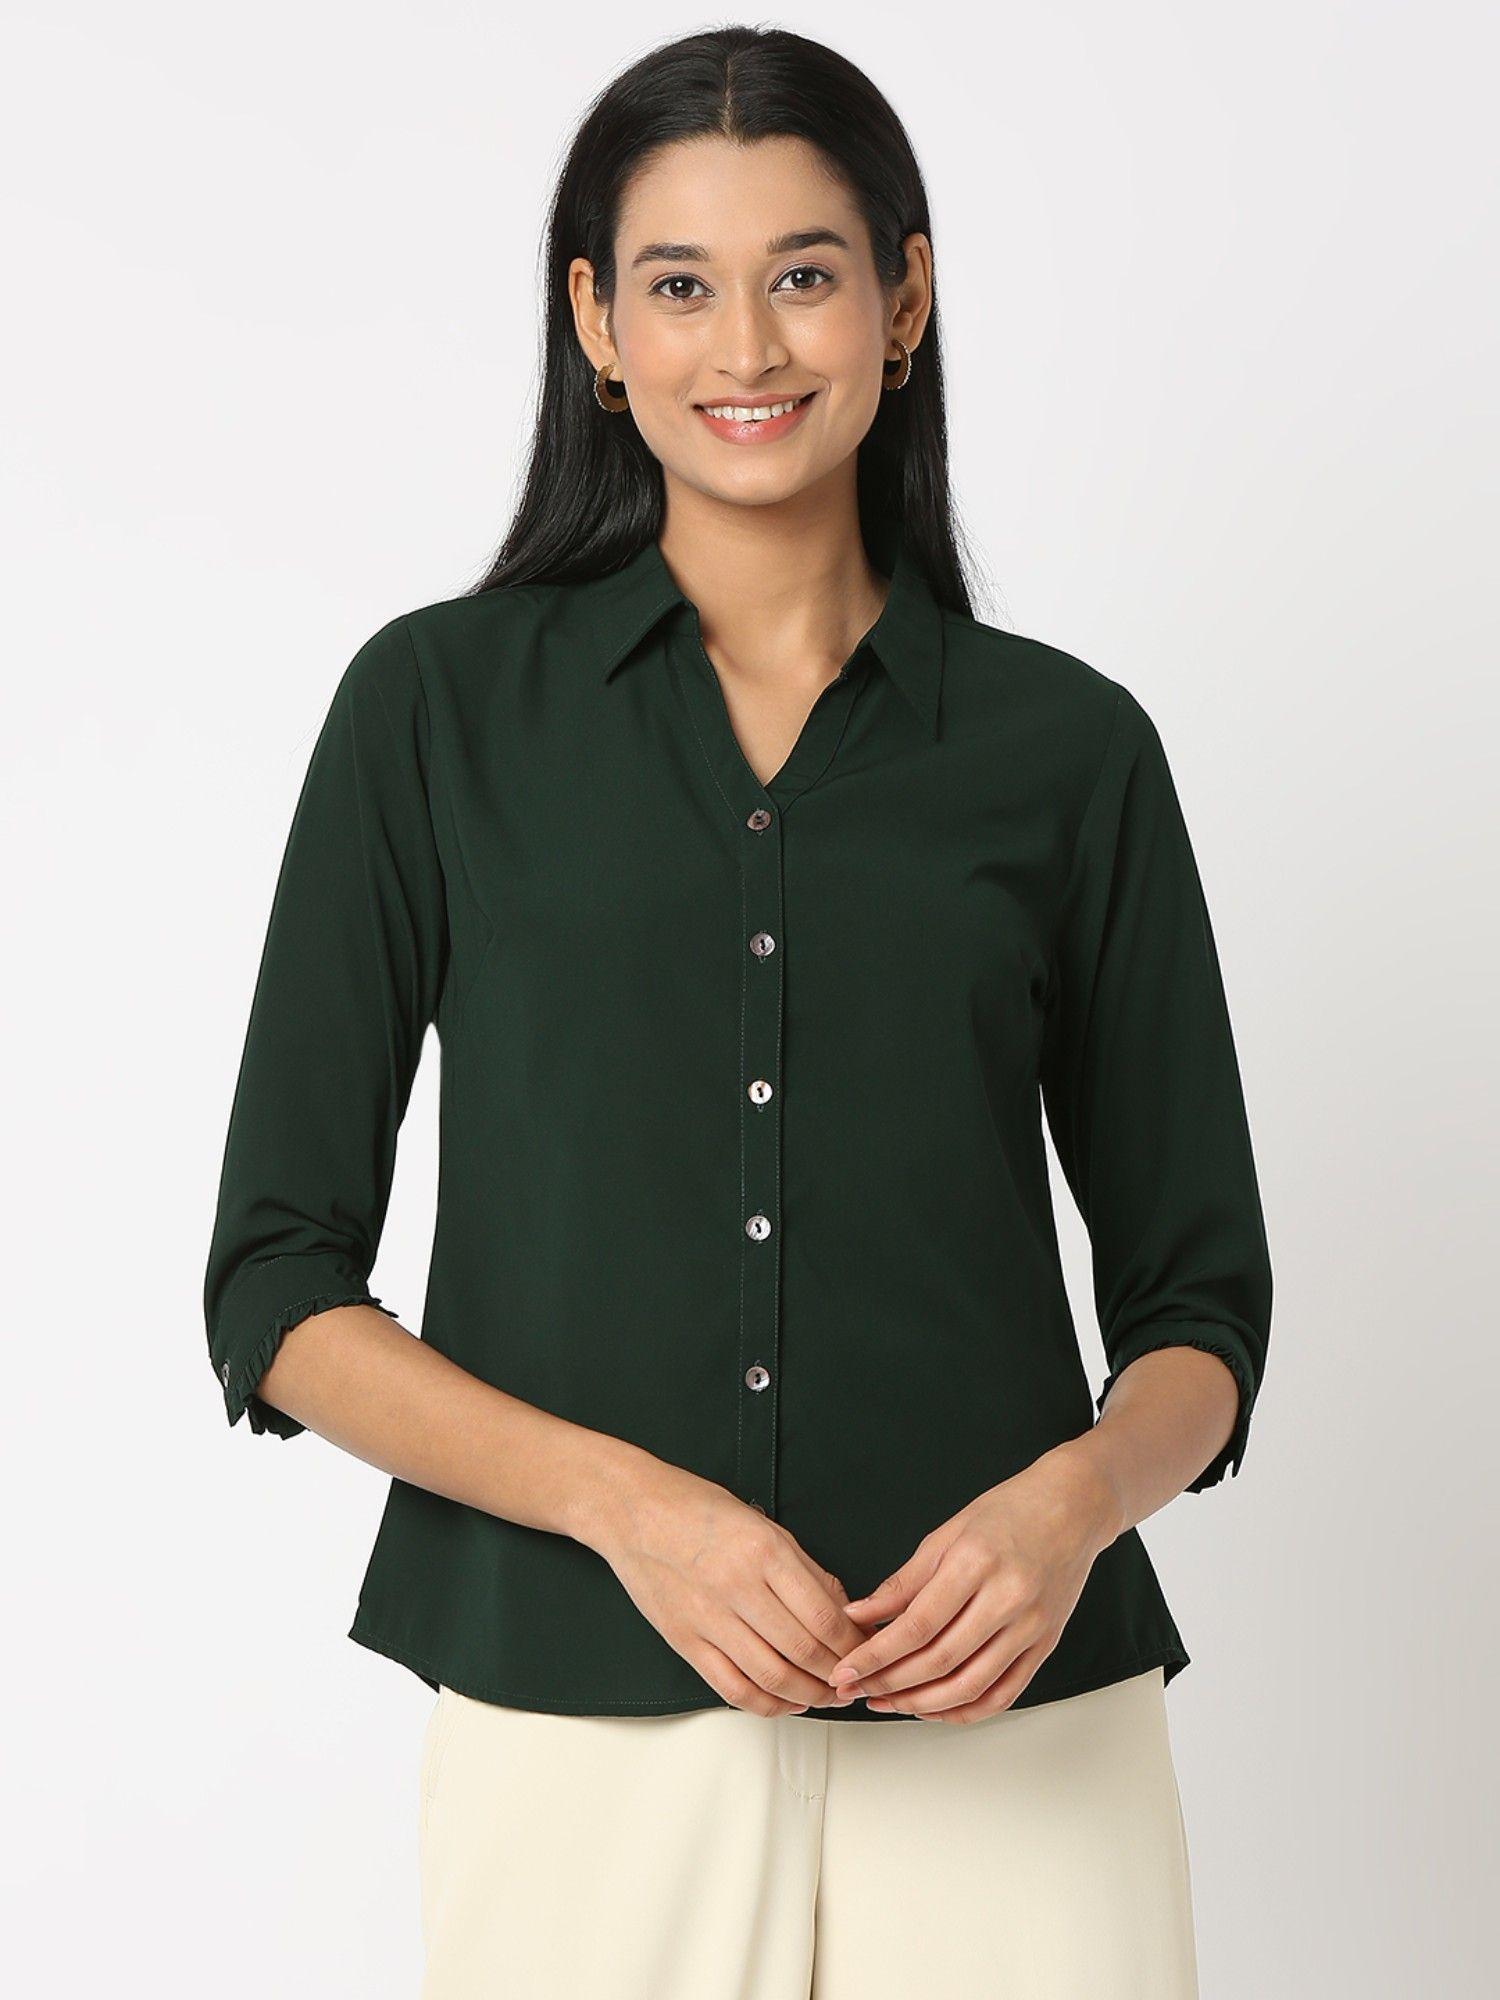 formal bottle green v-neck collar shirt